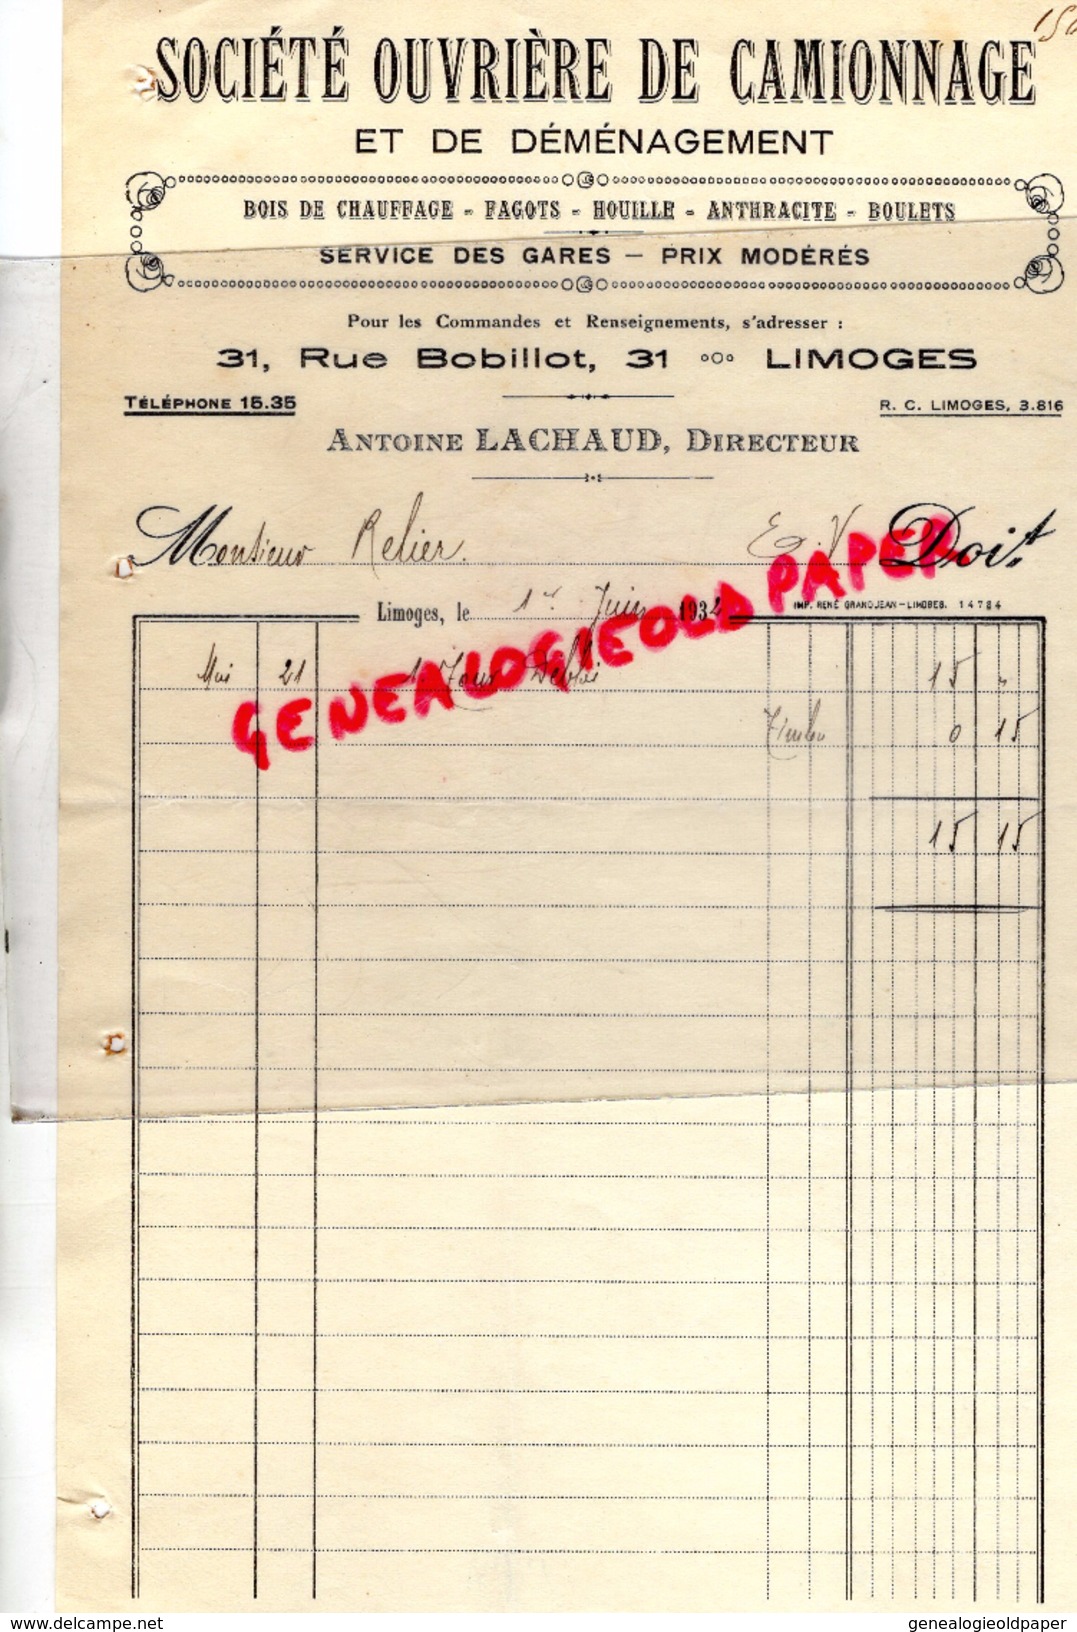 87 - LIMOGES - FACTURE SOCIETE OUVRIERE CAMIONNAGE DEMENAGEMENT- 31 RUE BOBILLOT- ANTOINE LACHAUD- 1932 - Transports